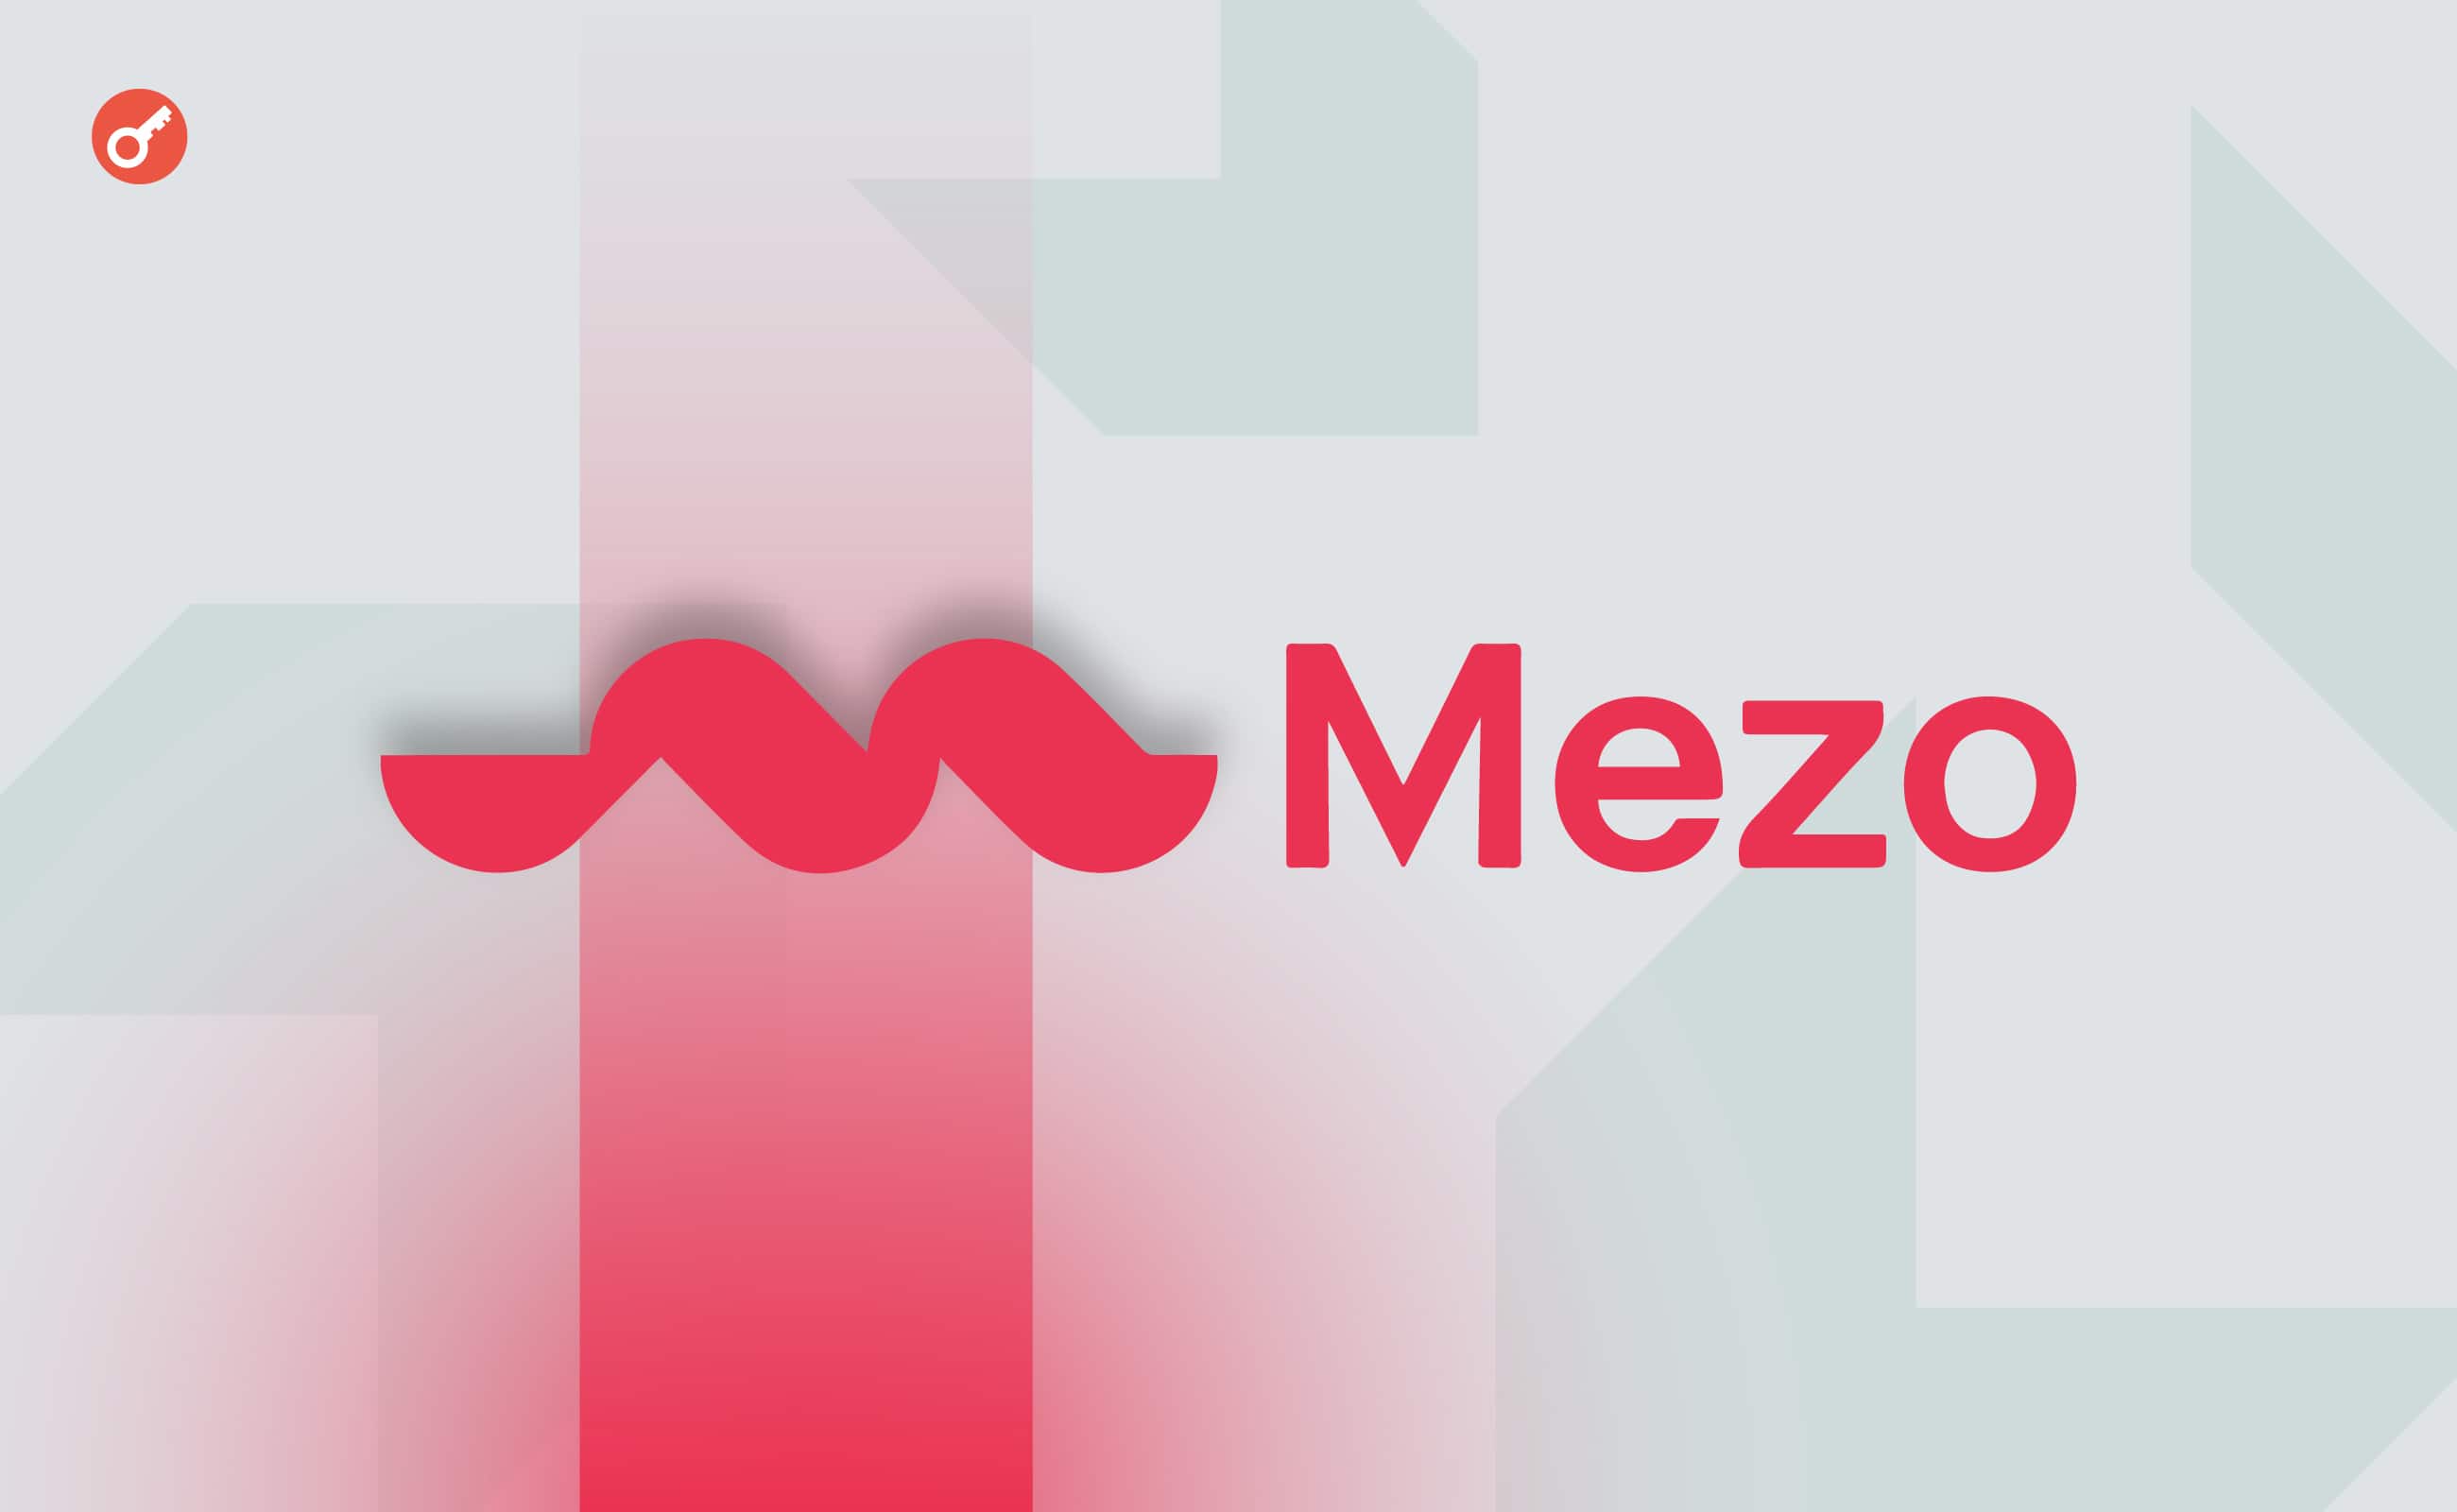 L2-сеть для биткоина Mezo привлекла $21 млн при участии Pantera Capital. Заглавный коллаж новости.